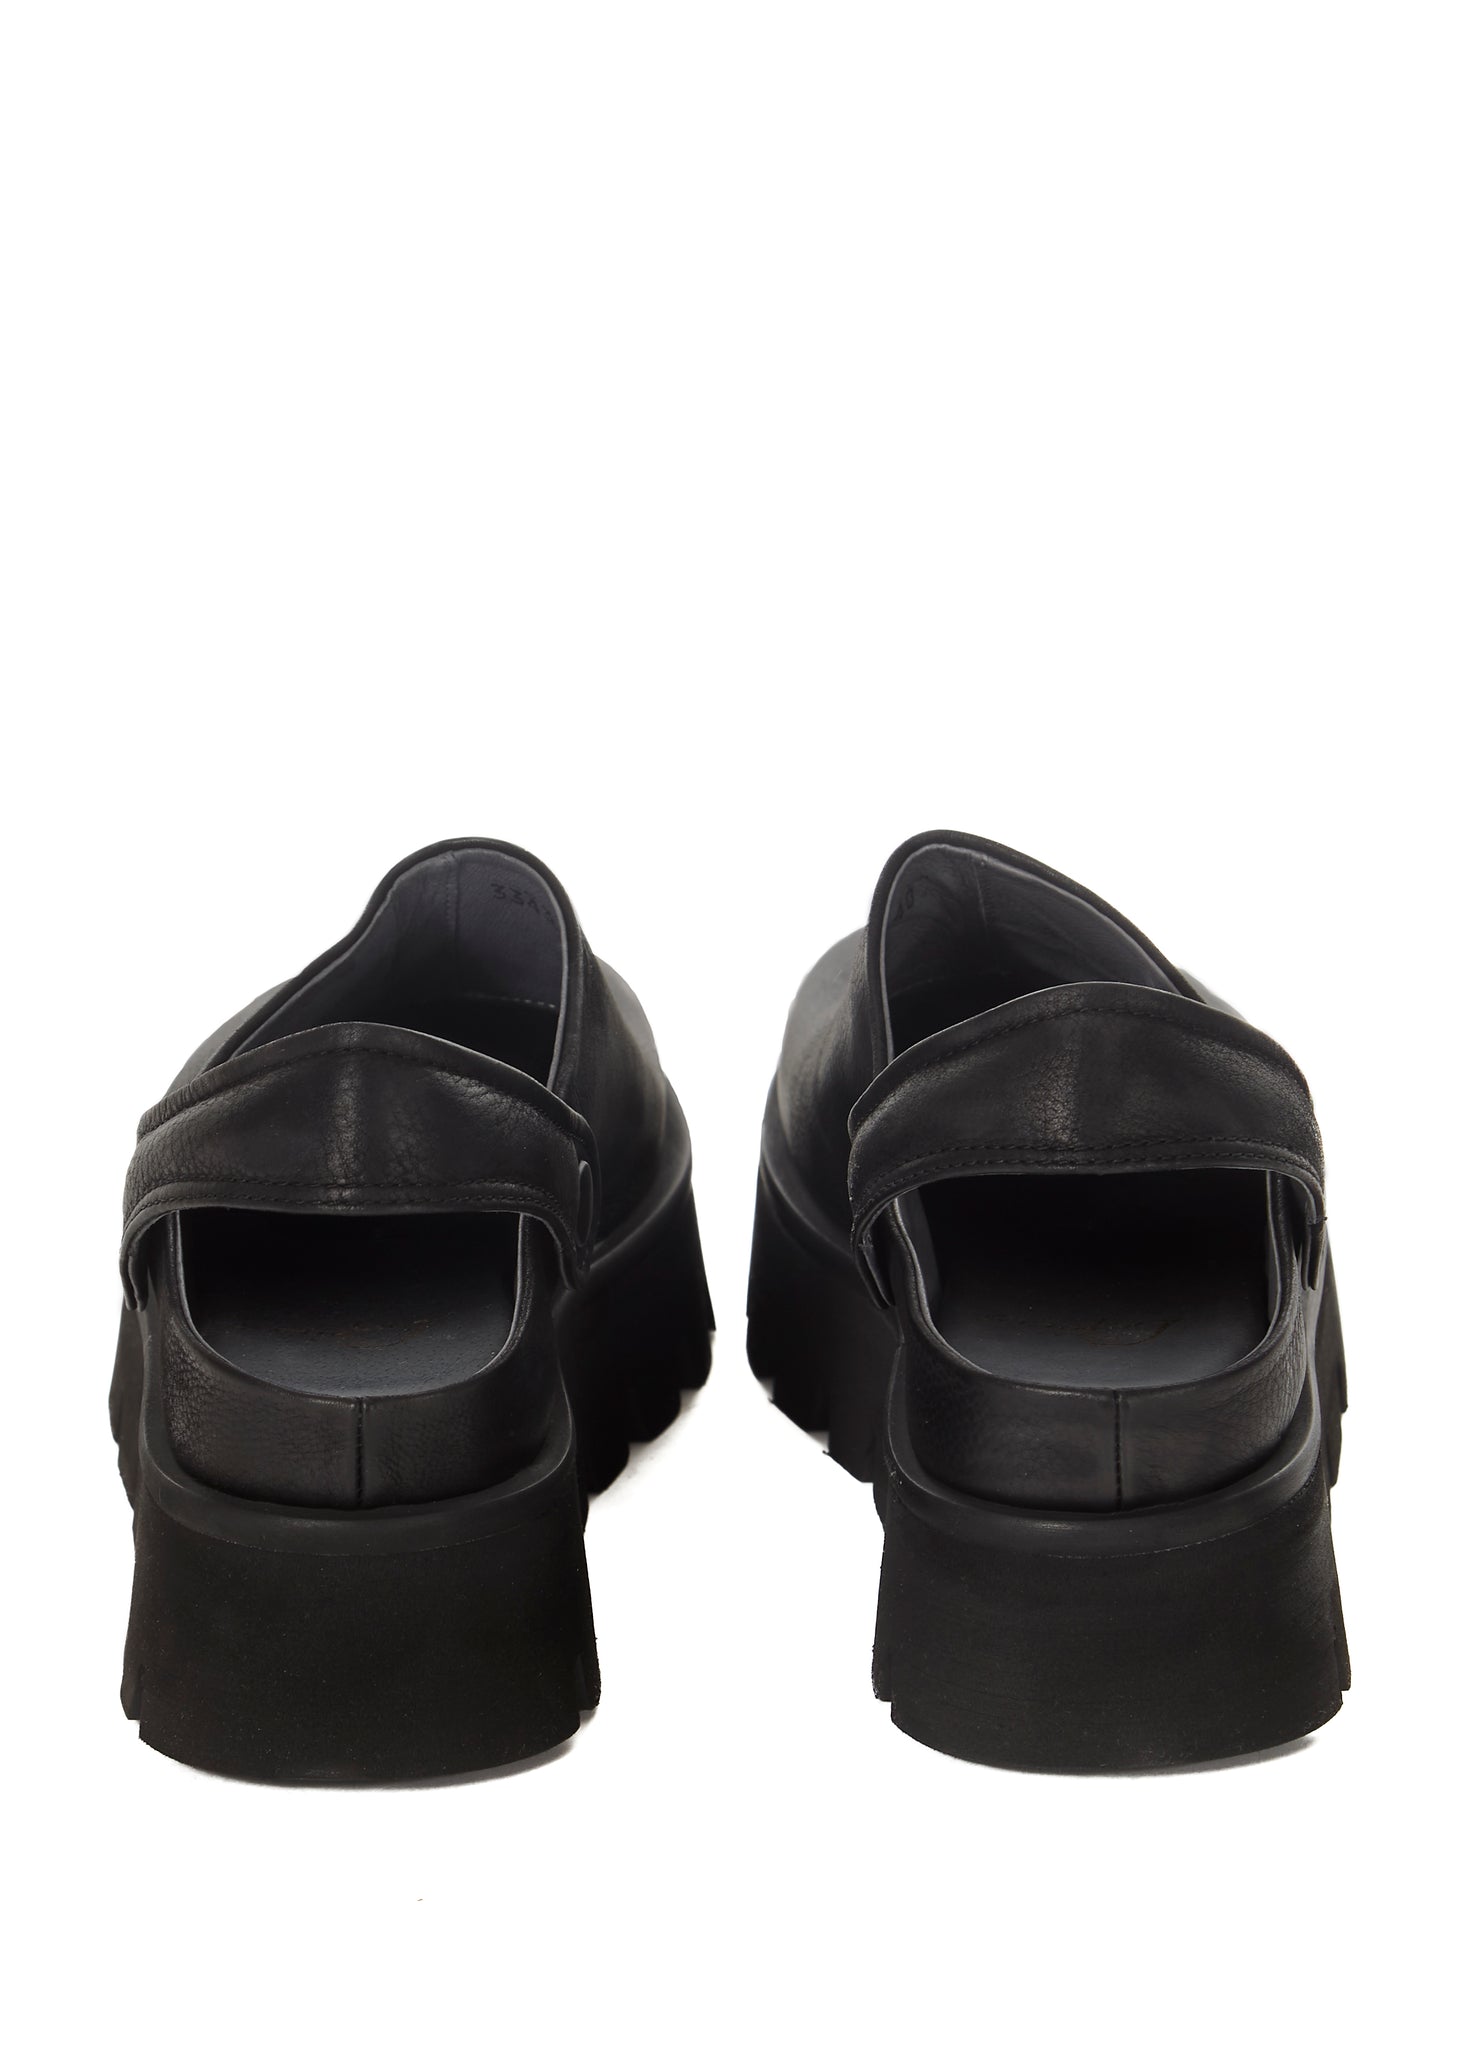 Open Back Black Clog Sandal With Strap